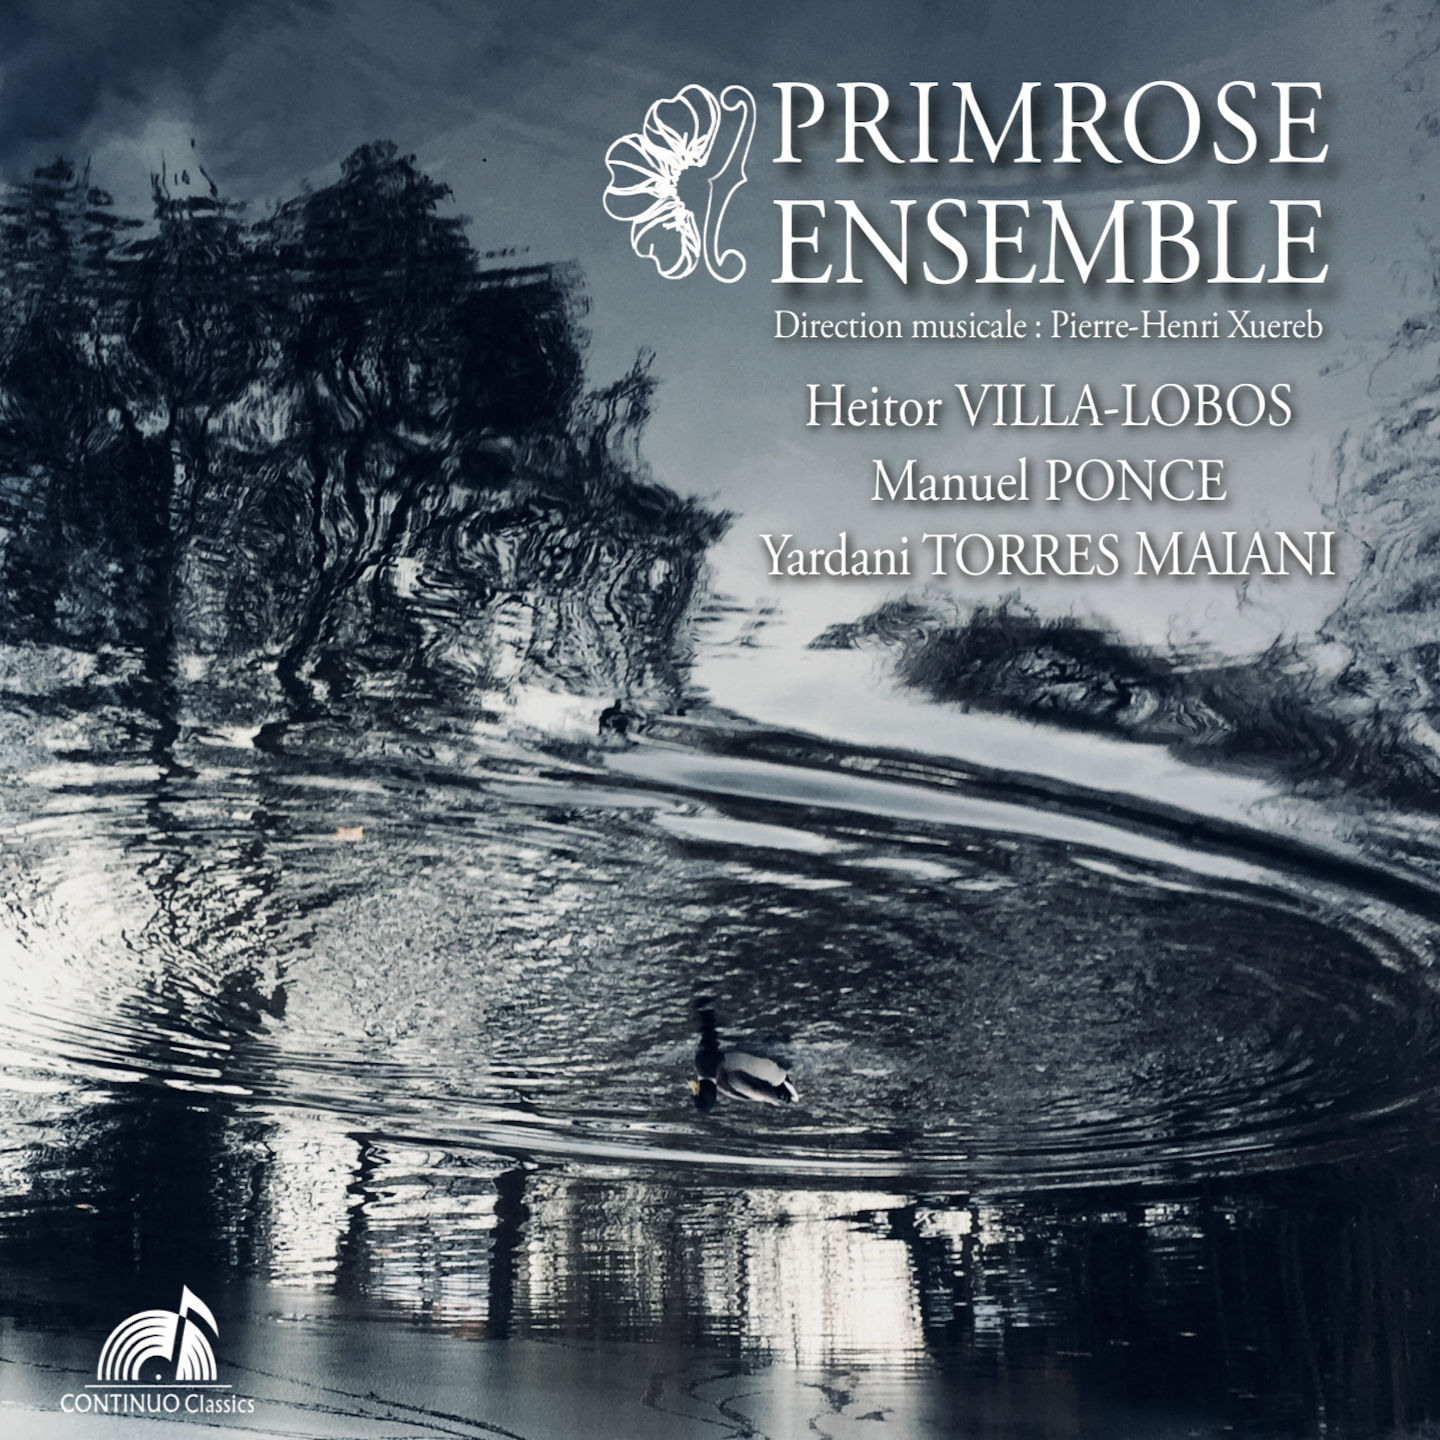 Primrose Ensemble – Primrose Ensemble (2021) [FLAC 24bit/96kHz]